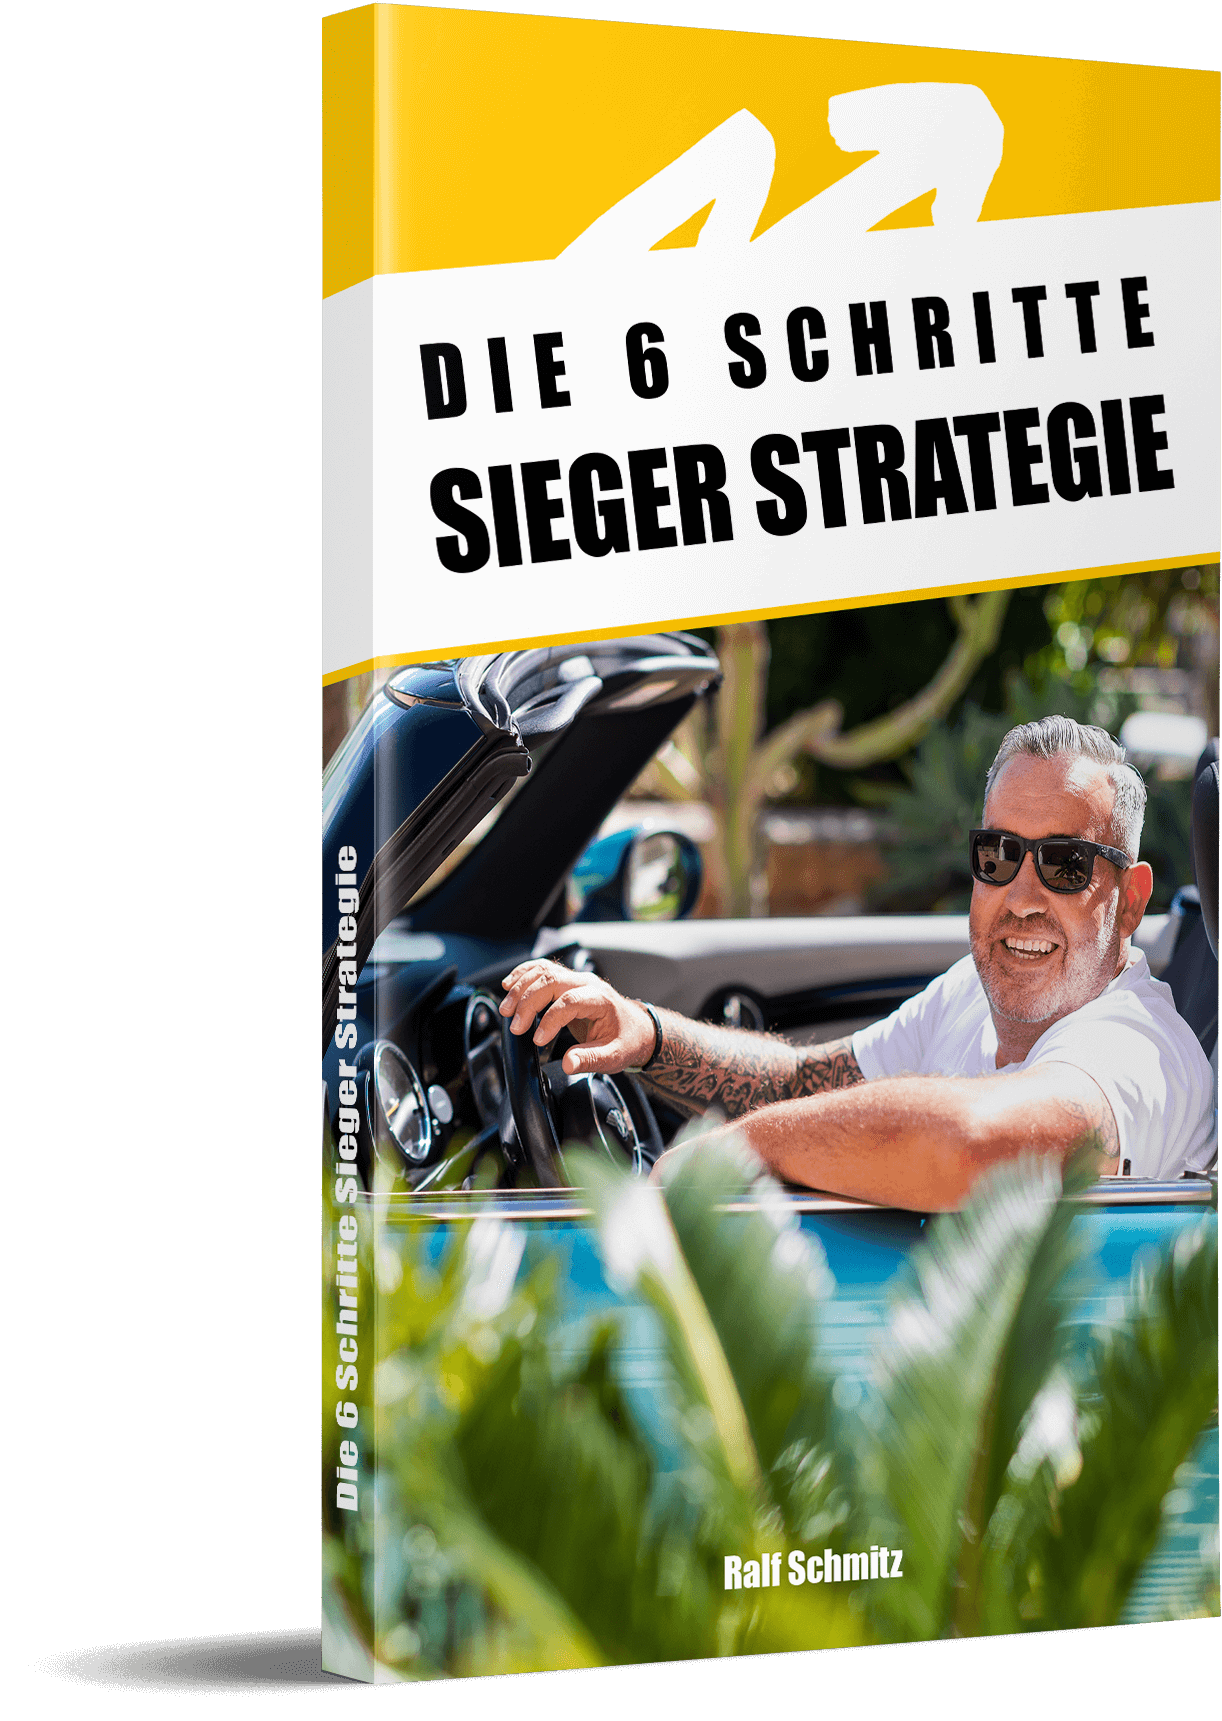 Ralf Schmitz 6 Schritte Sieger Strategie